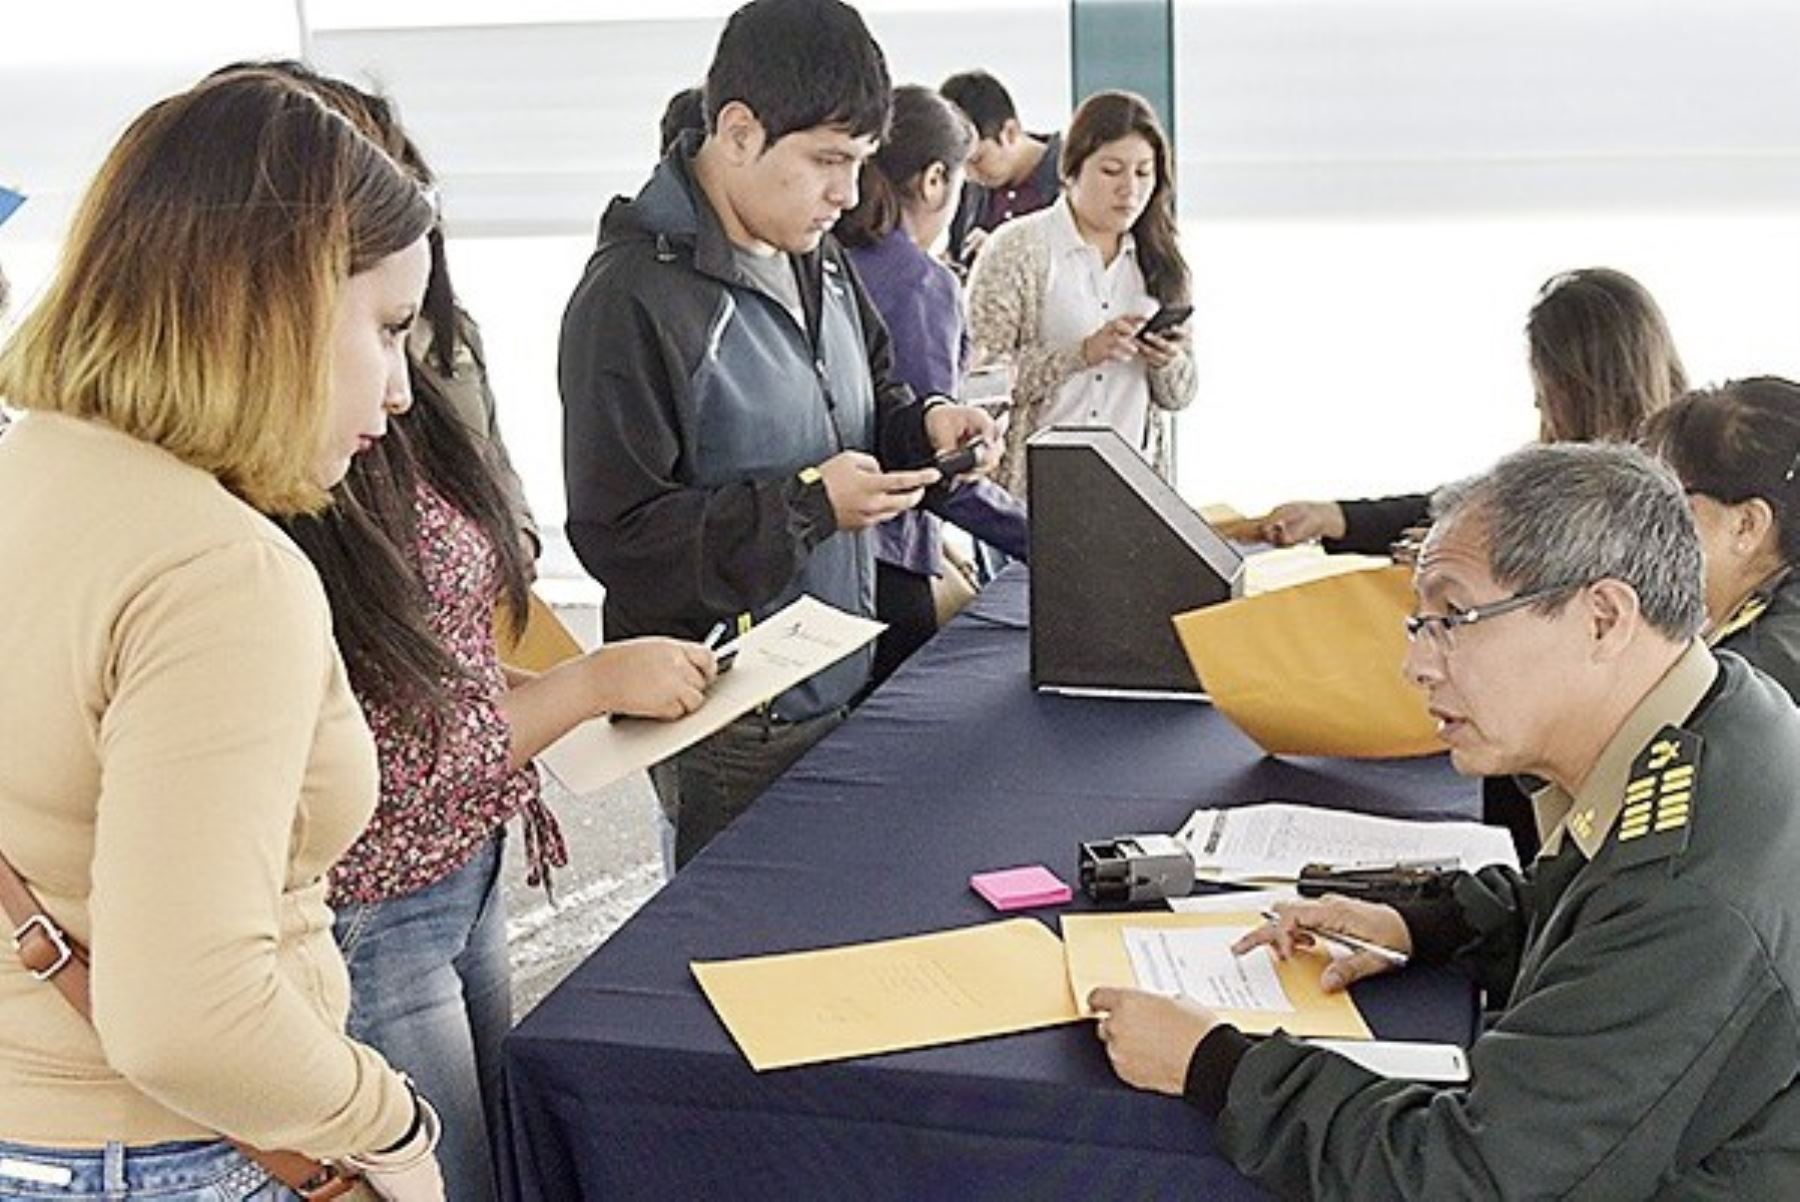 Servir capacitará al personal civil que ingrese a trabajar a comisarías de Lima. Foto: ANDINA/archivo.